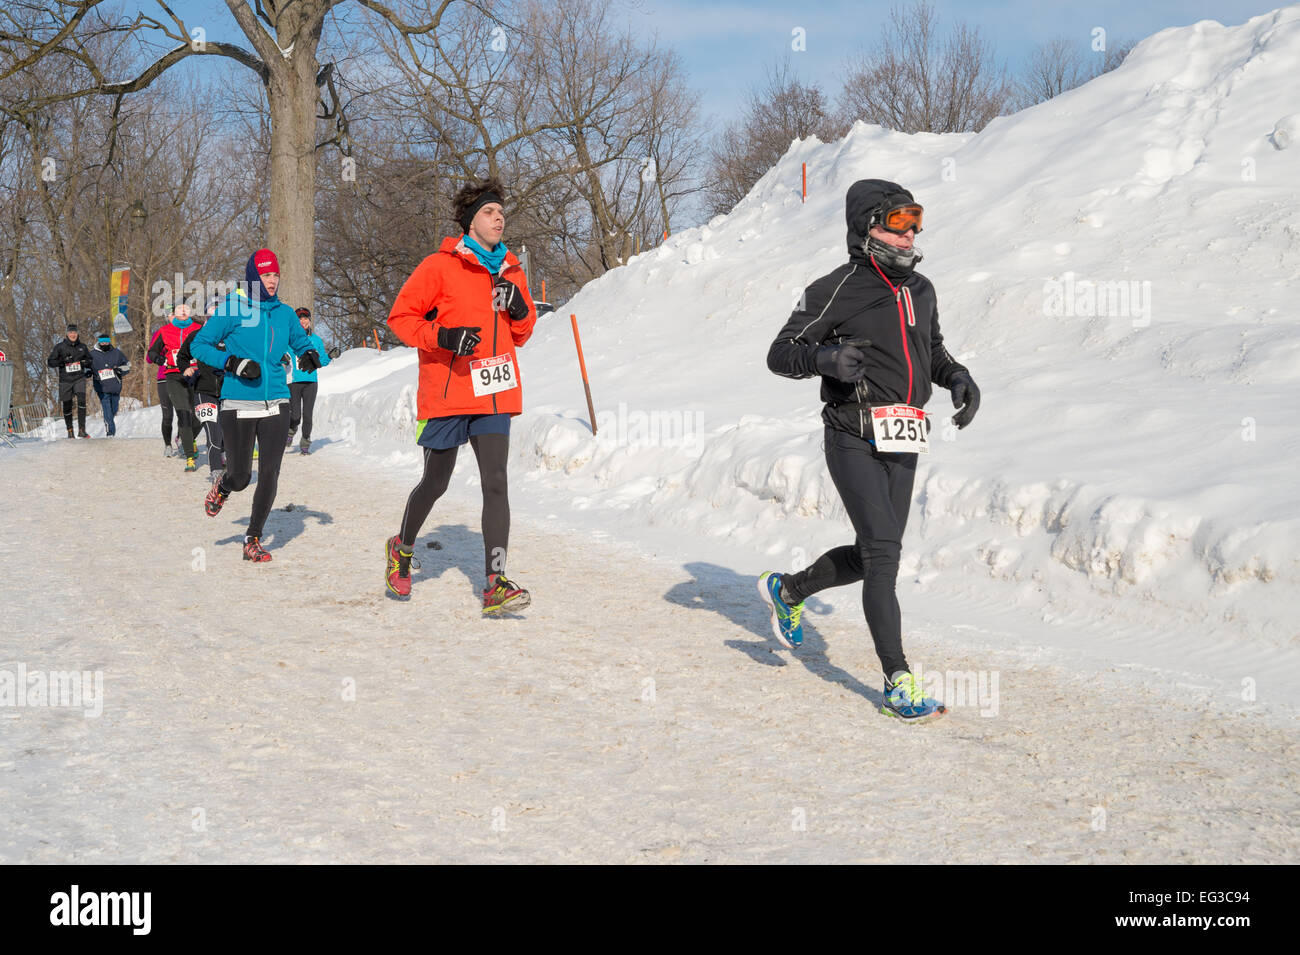 MONTREAL, Canadá, 15 de febrero: los corredores no identificados durante la media maratón Hypothermic el 15 de febrero de 2015 en Montreal, Canadá. Foto de stock